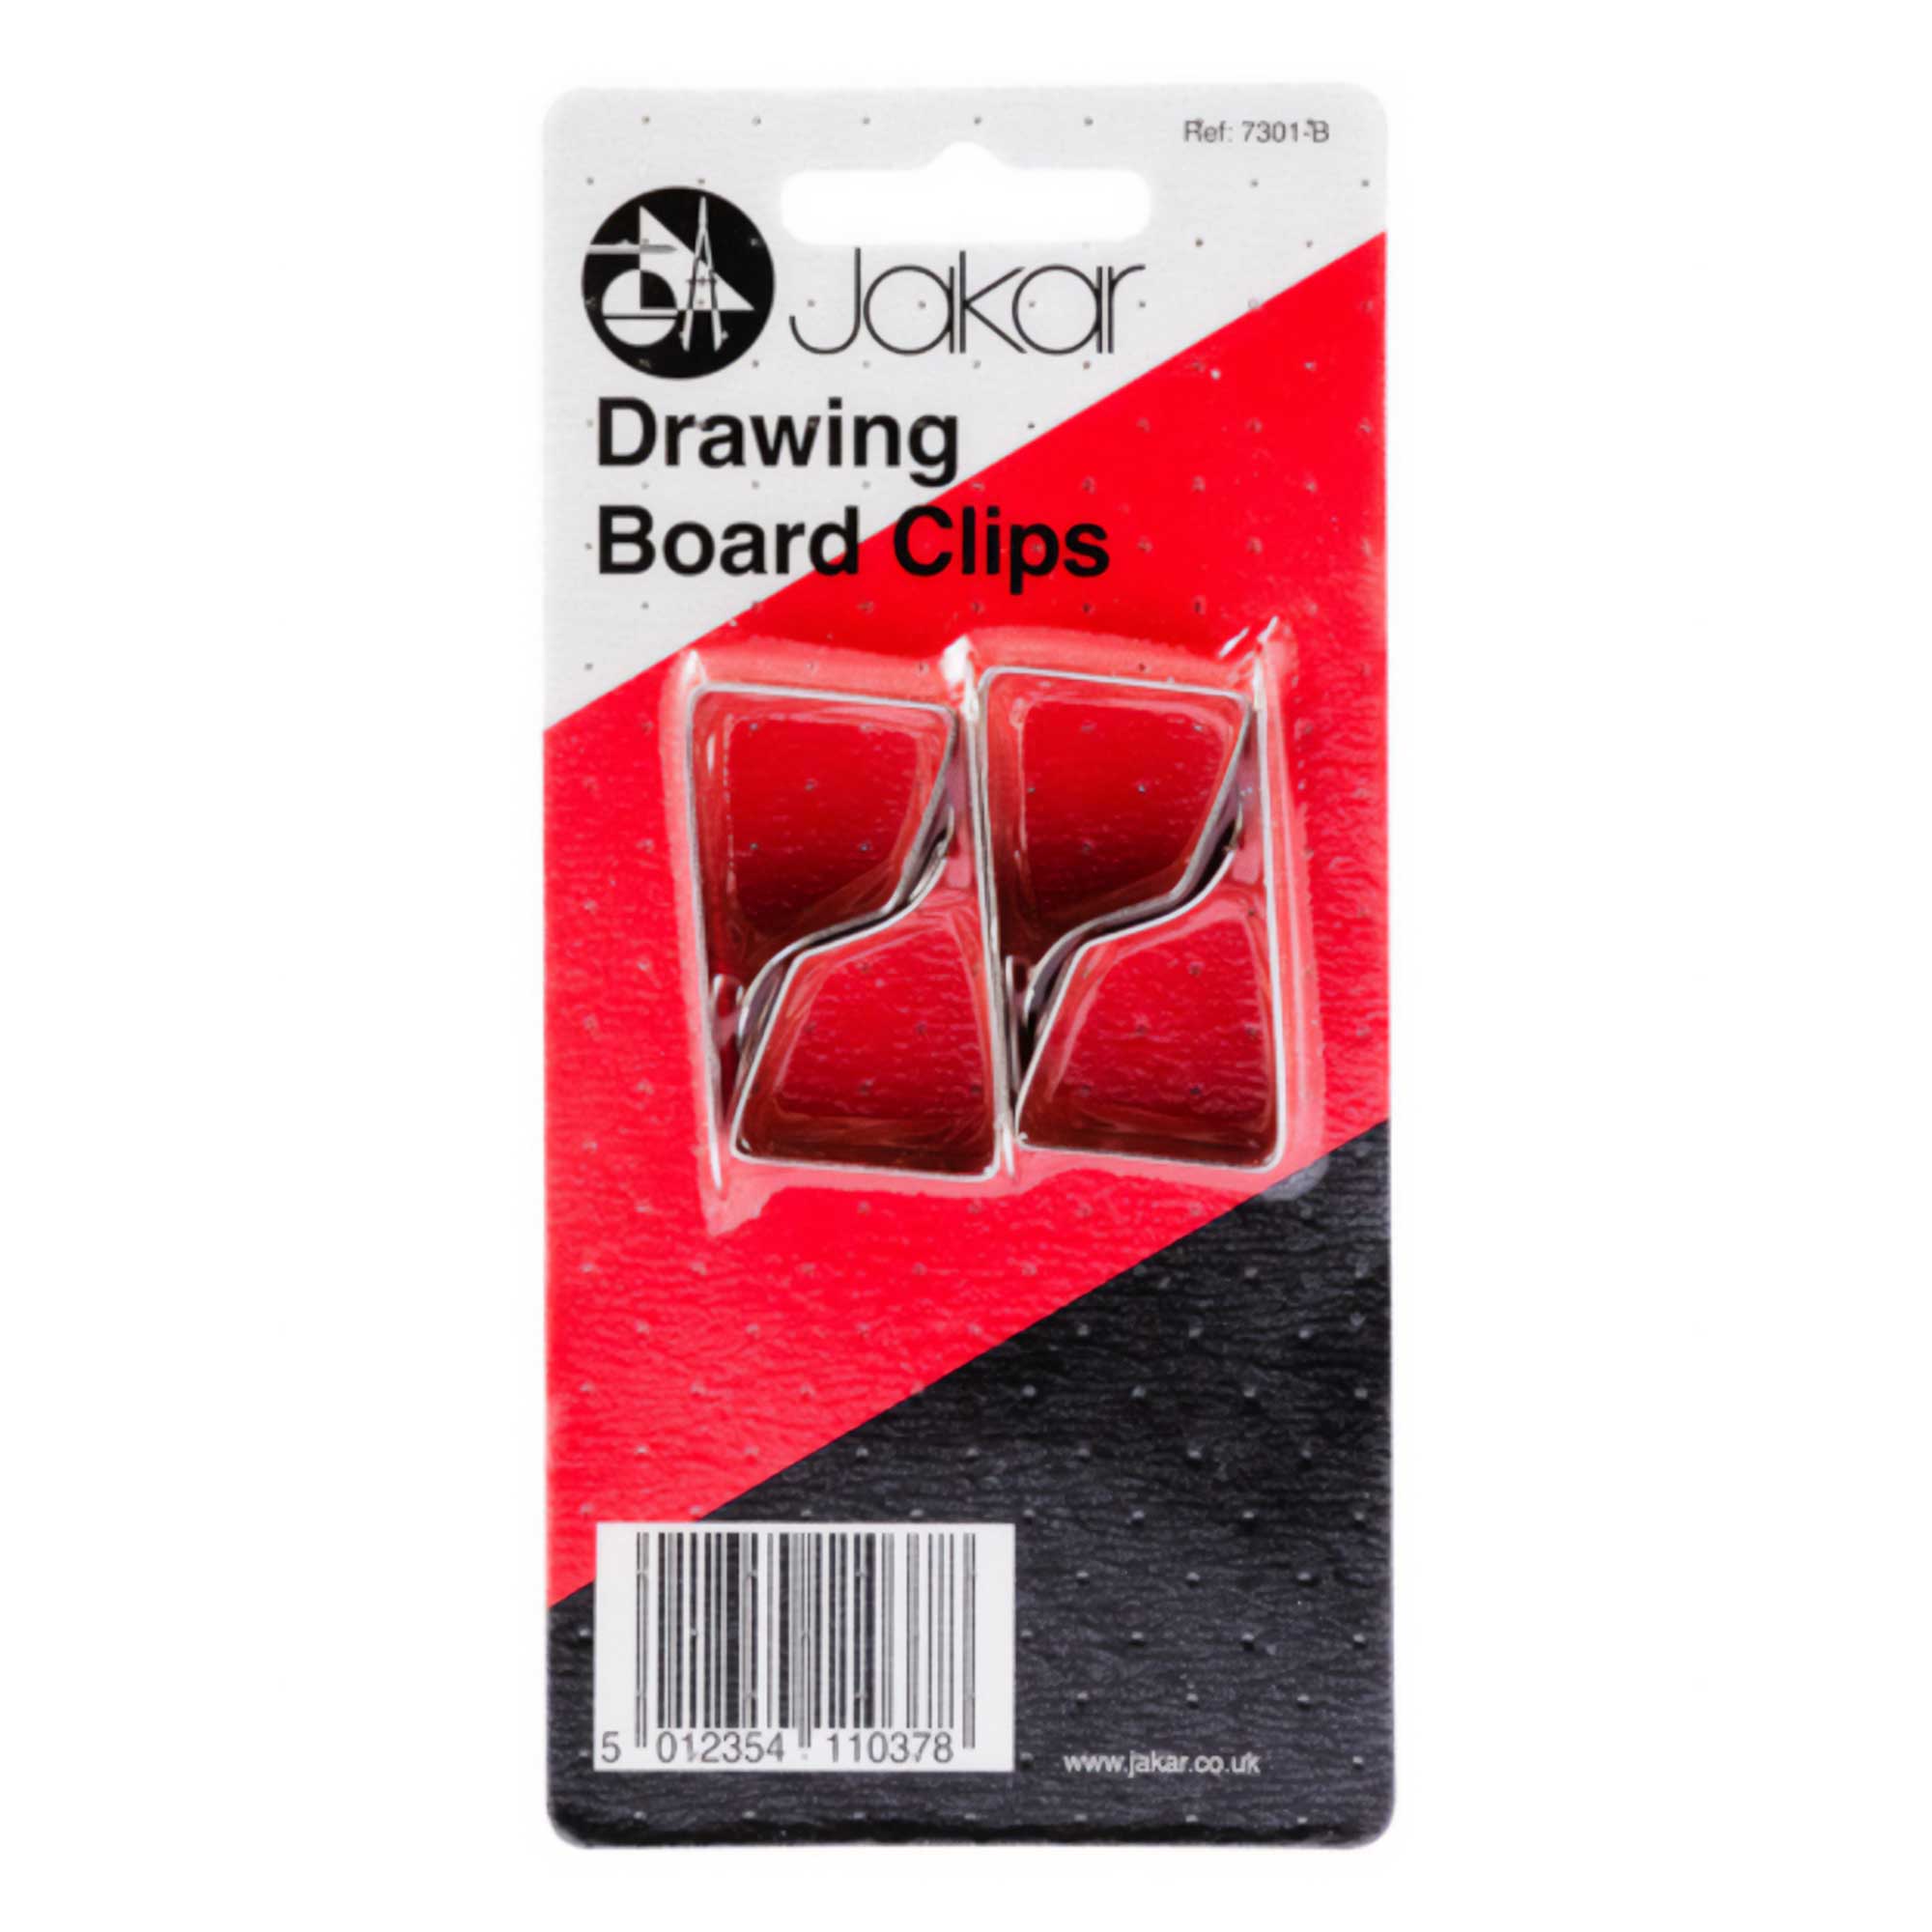 Jakar Drawing Board Clips in Packaging